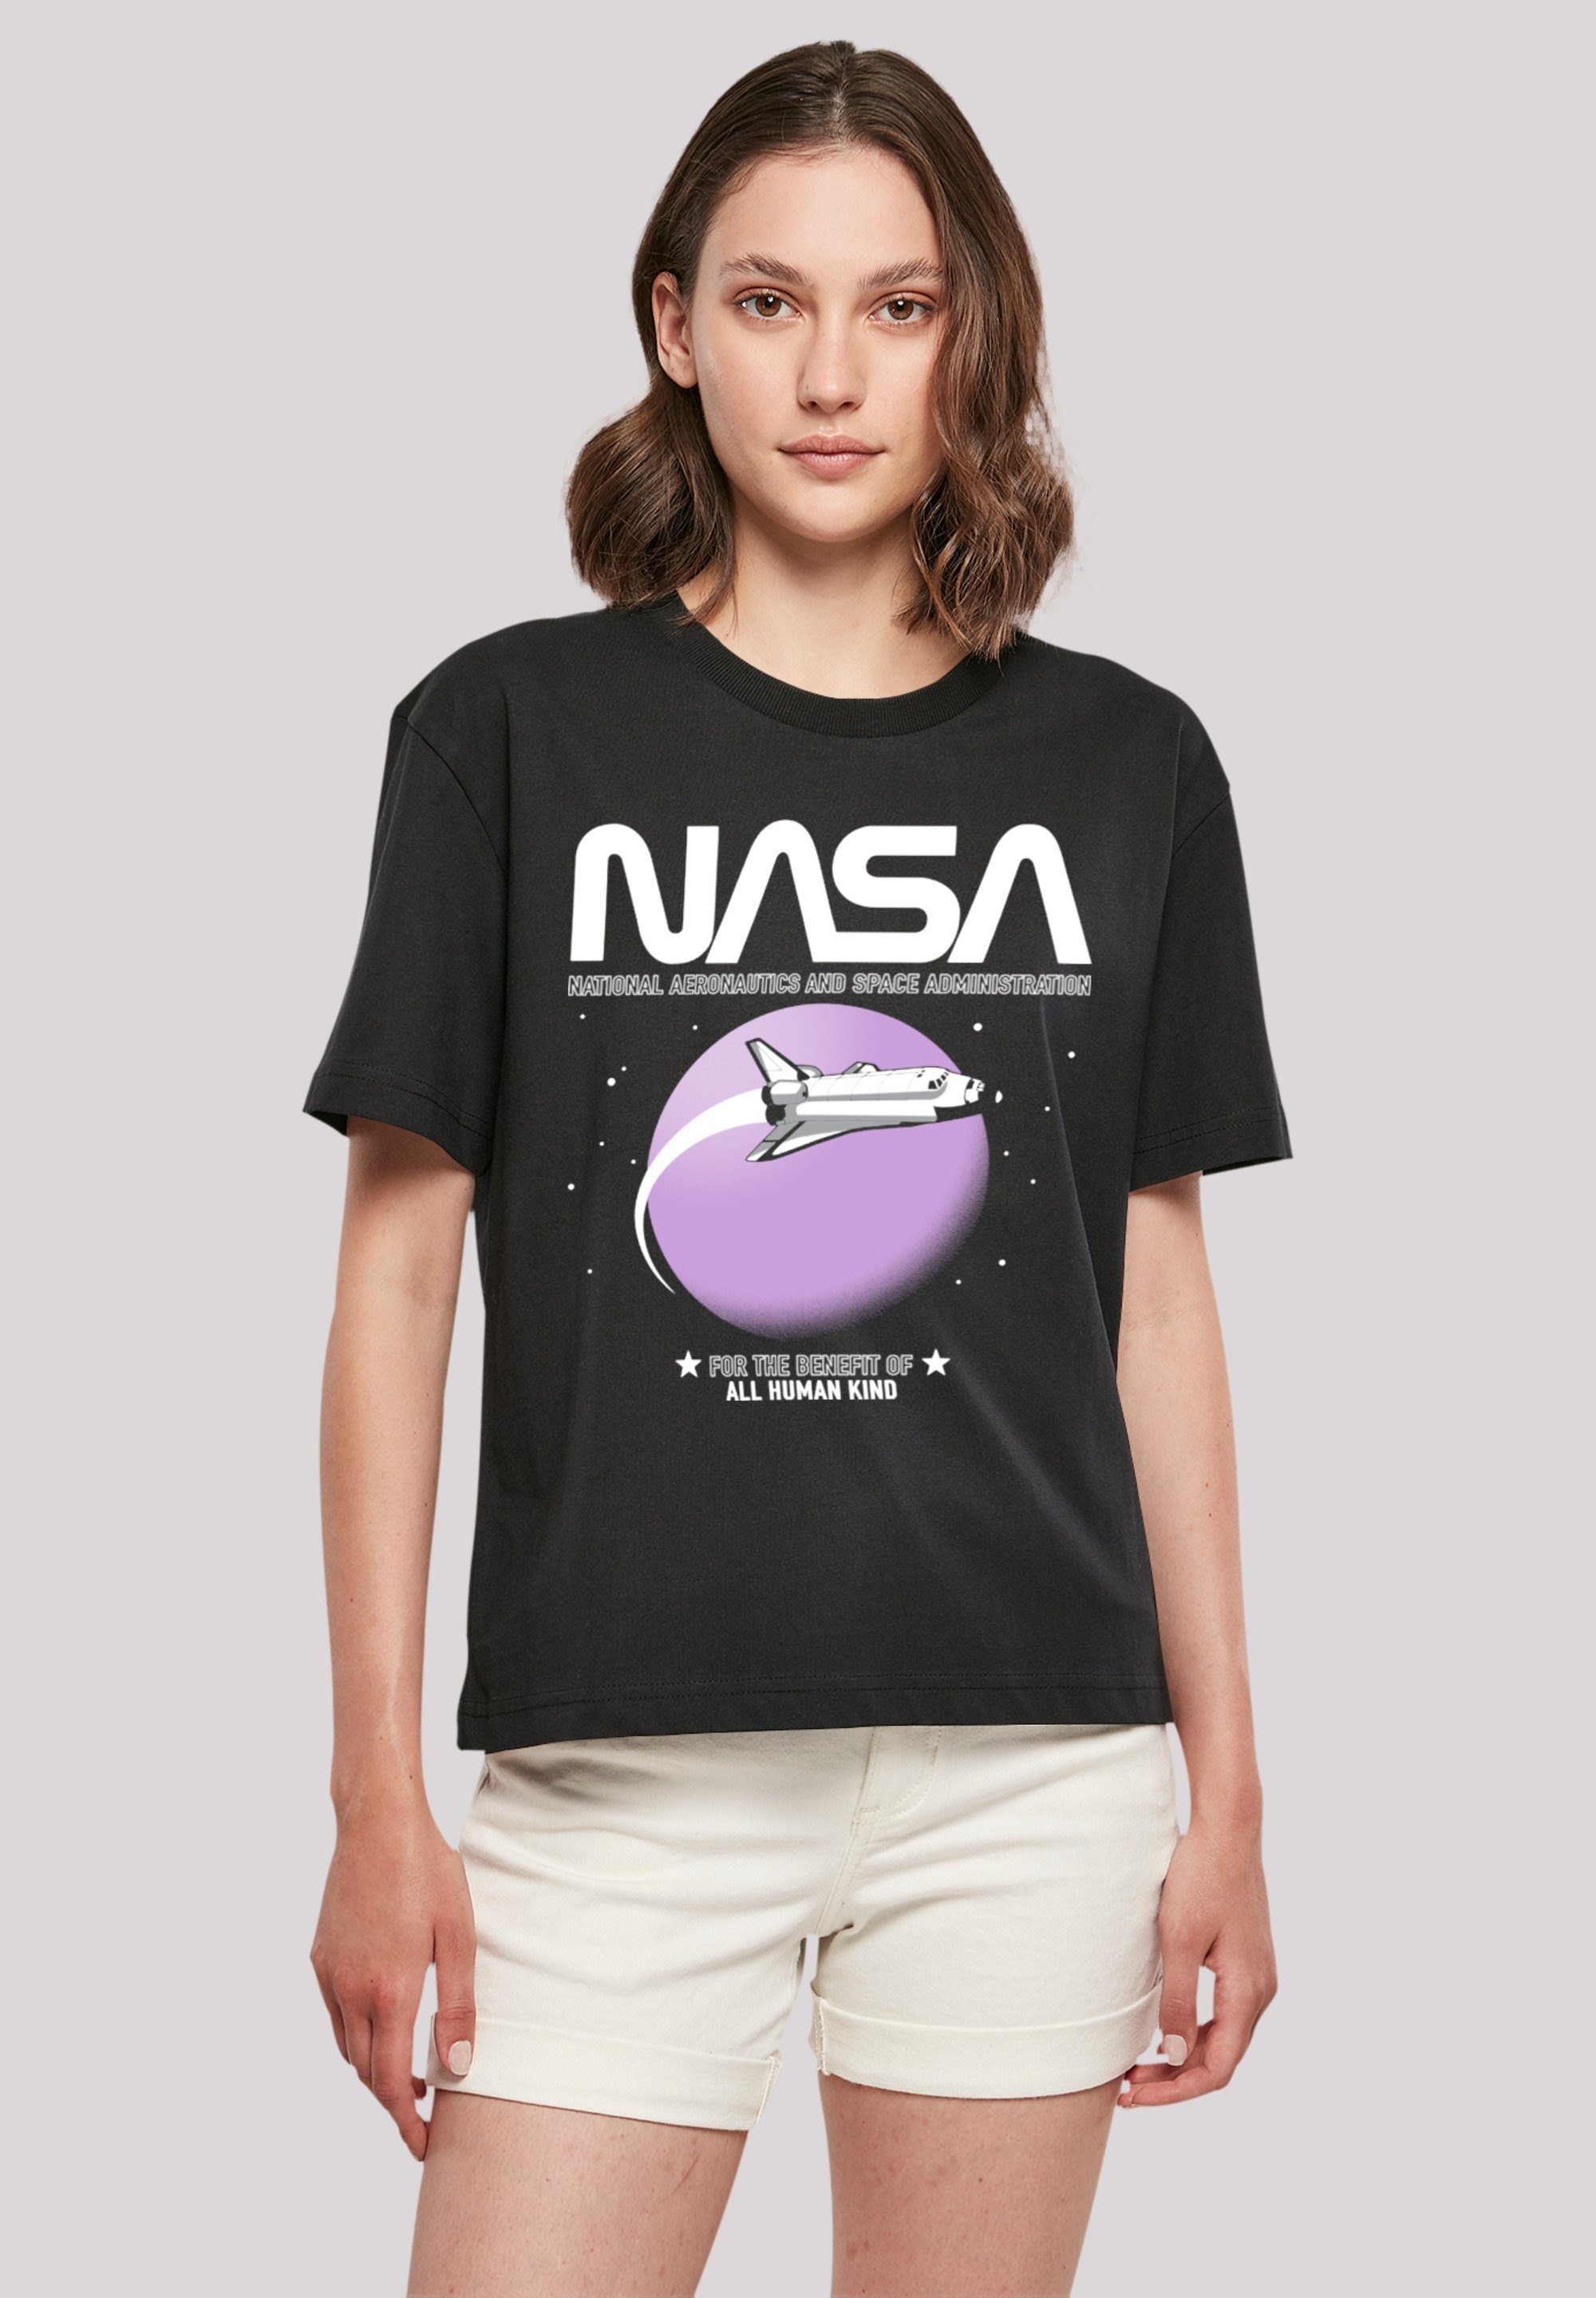 F4NT4STIC T-Shirt NASA Shuttle Orbit Print, Fällt weit aus, bitte eine  Größe kleiner bestellen